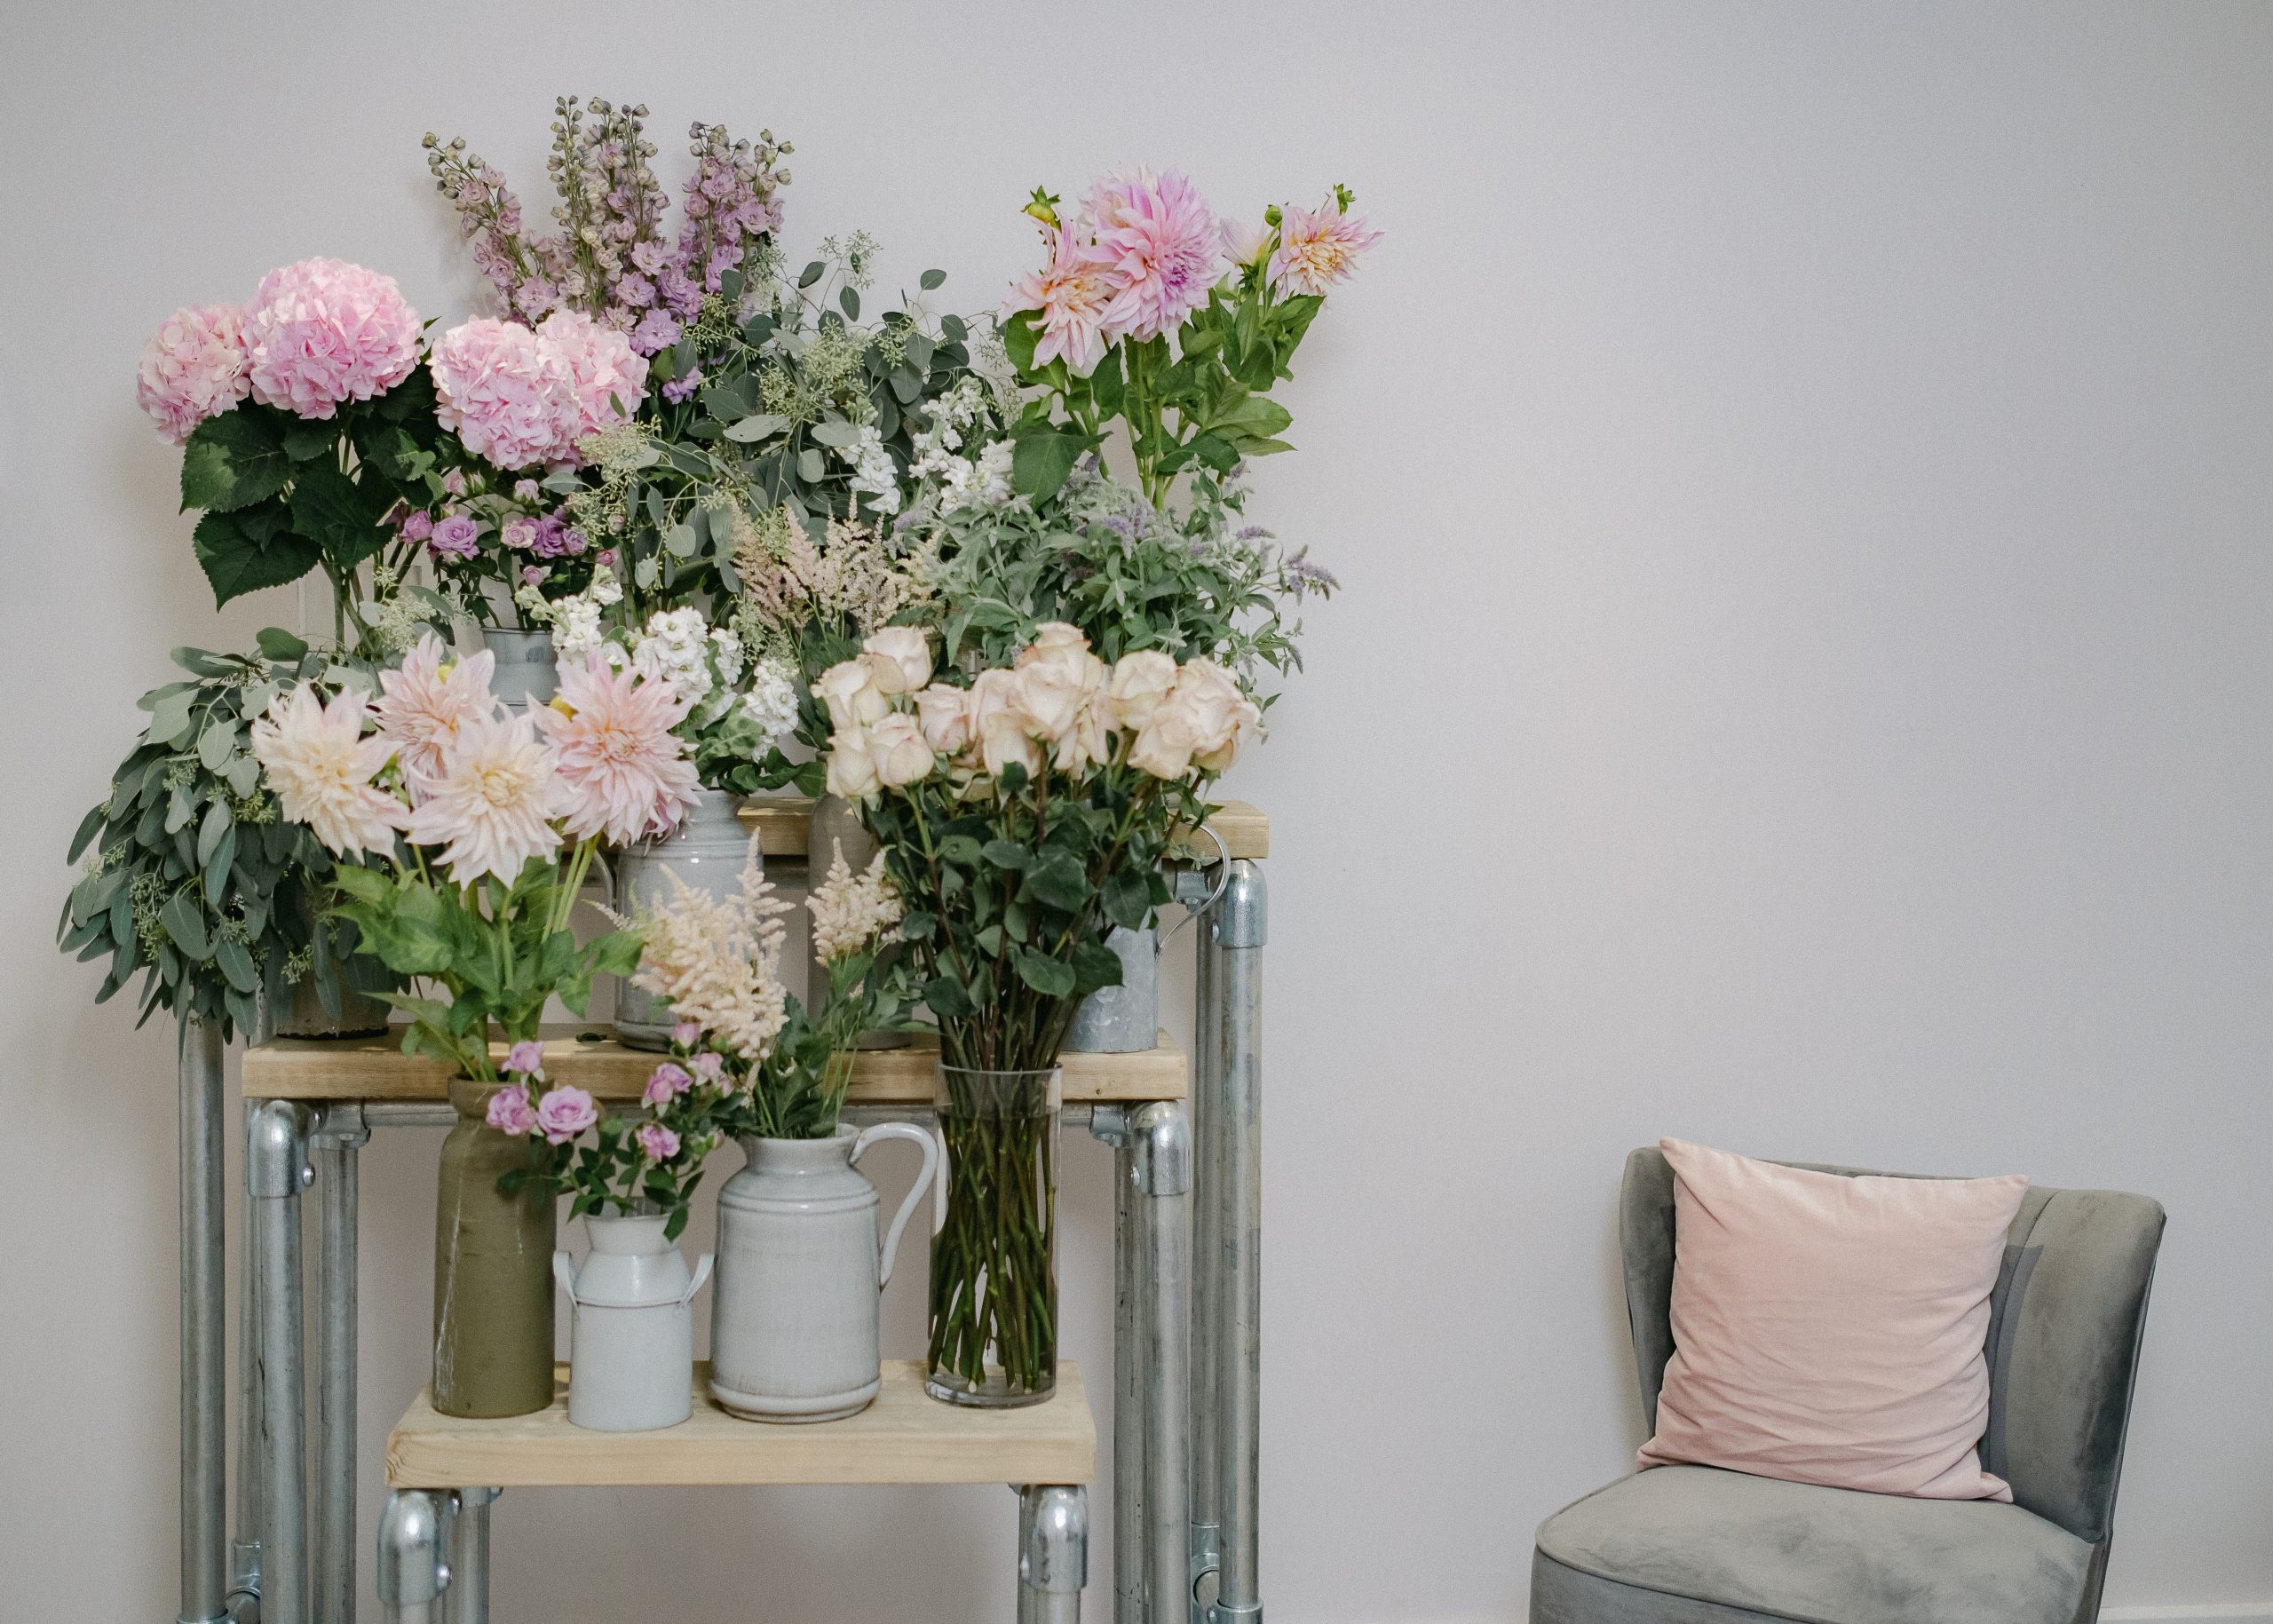 display of flowers beside chair